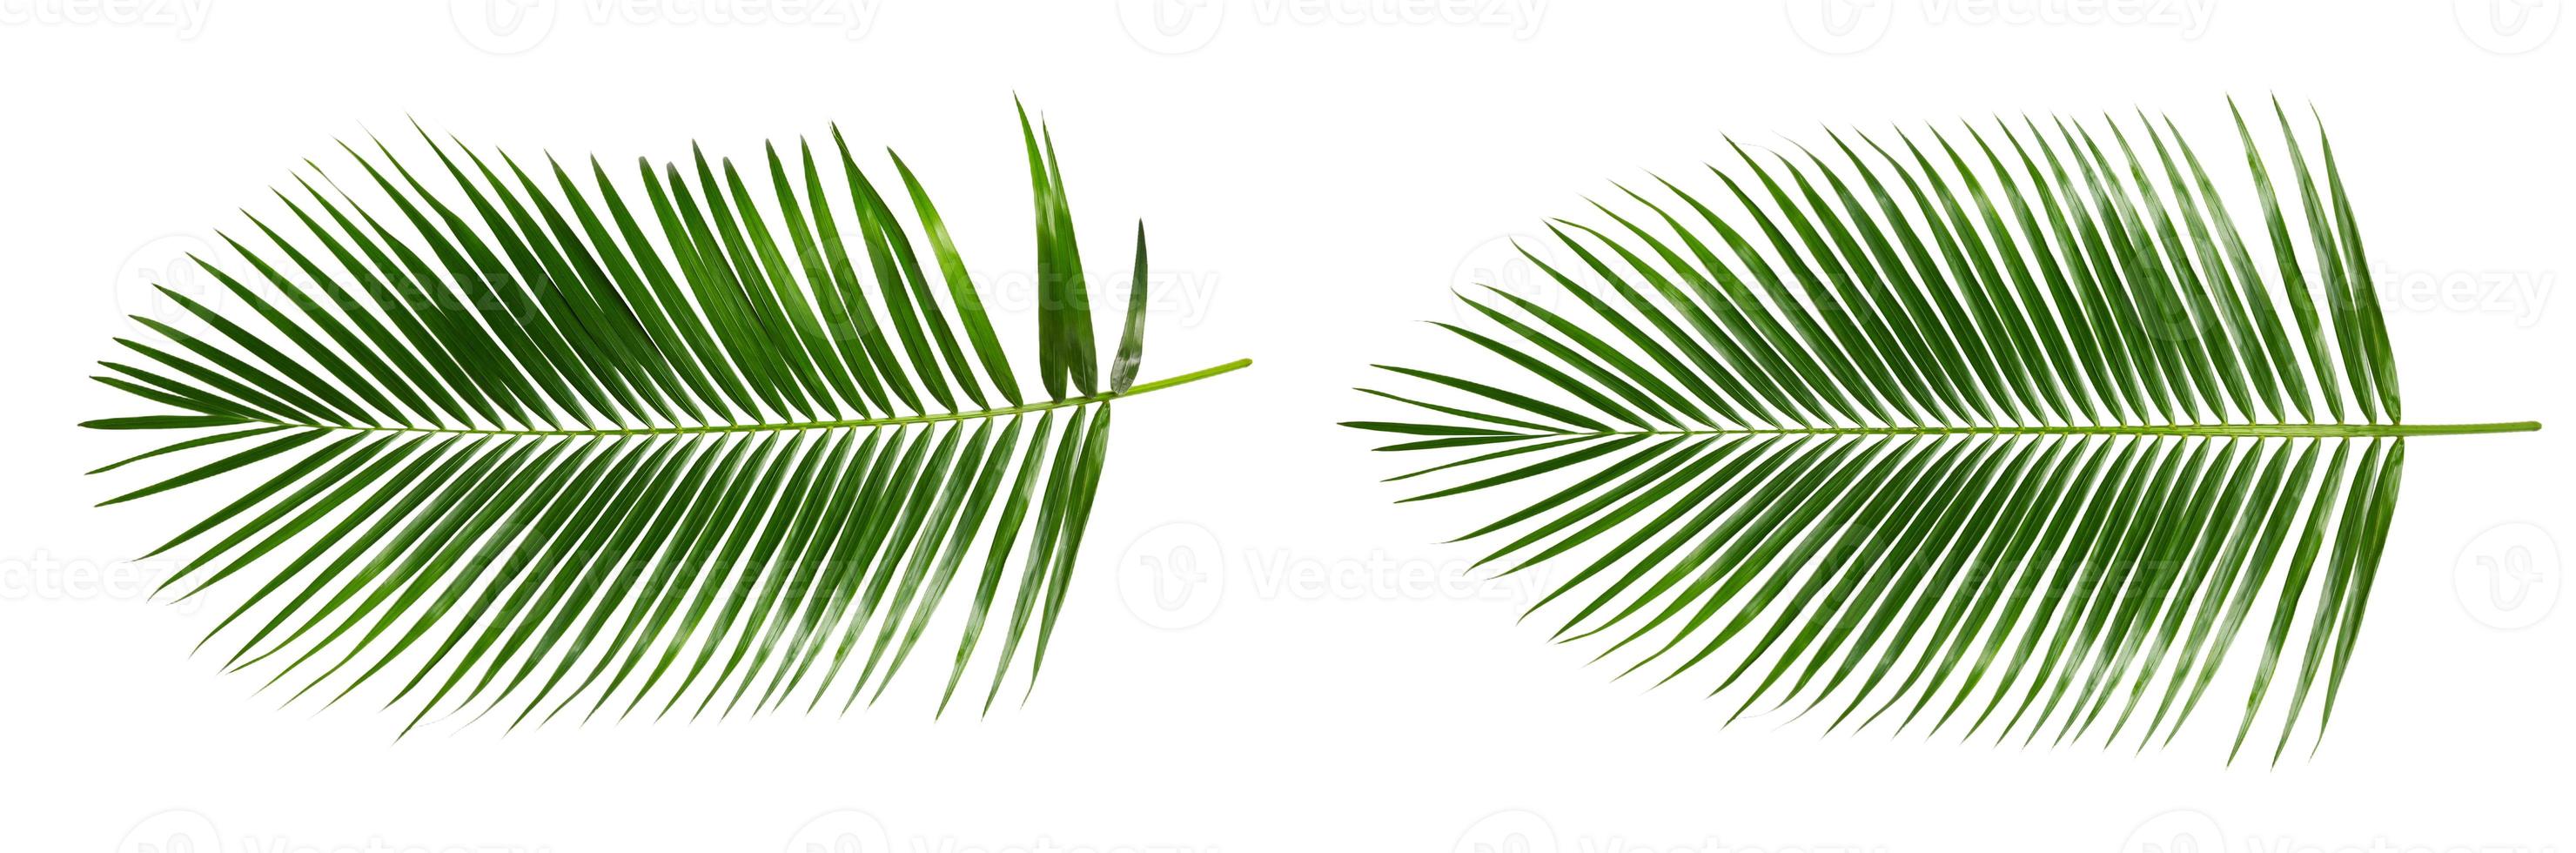 feuilles de palmier isolées photo